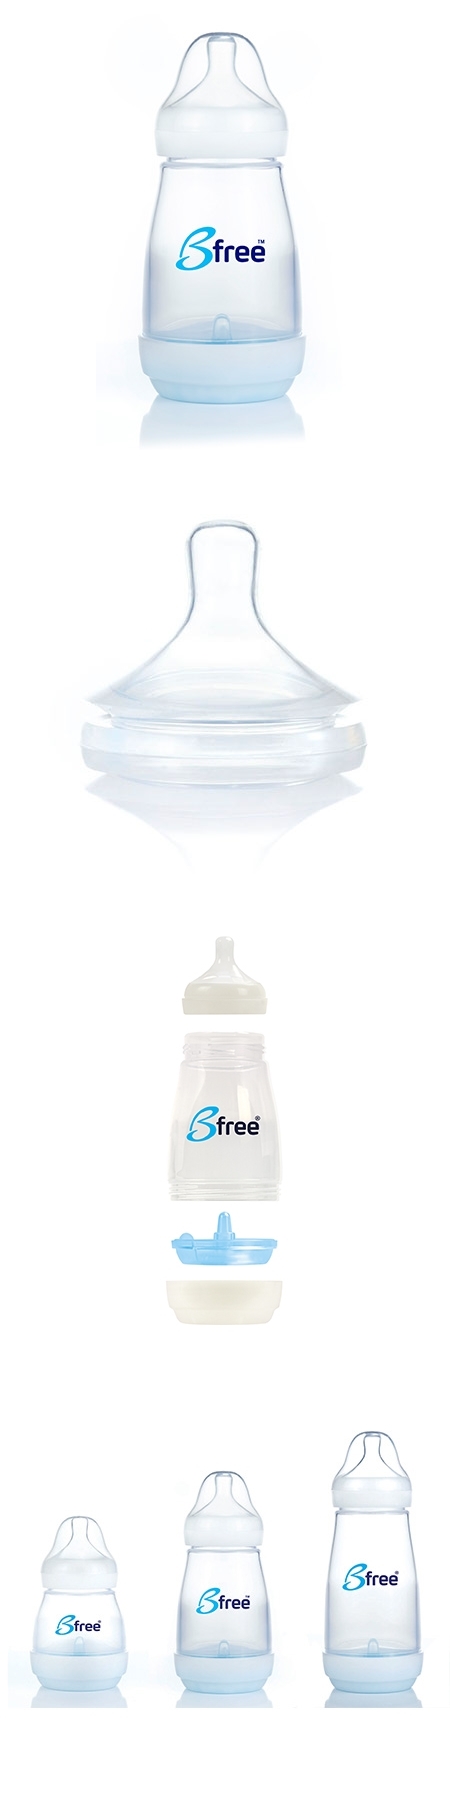 貝麗Bfree-PP-EU防脹氣奶瓶寬口徑260ml 